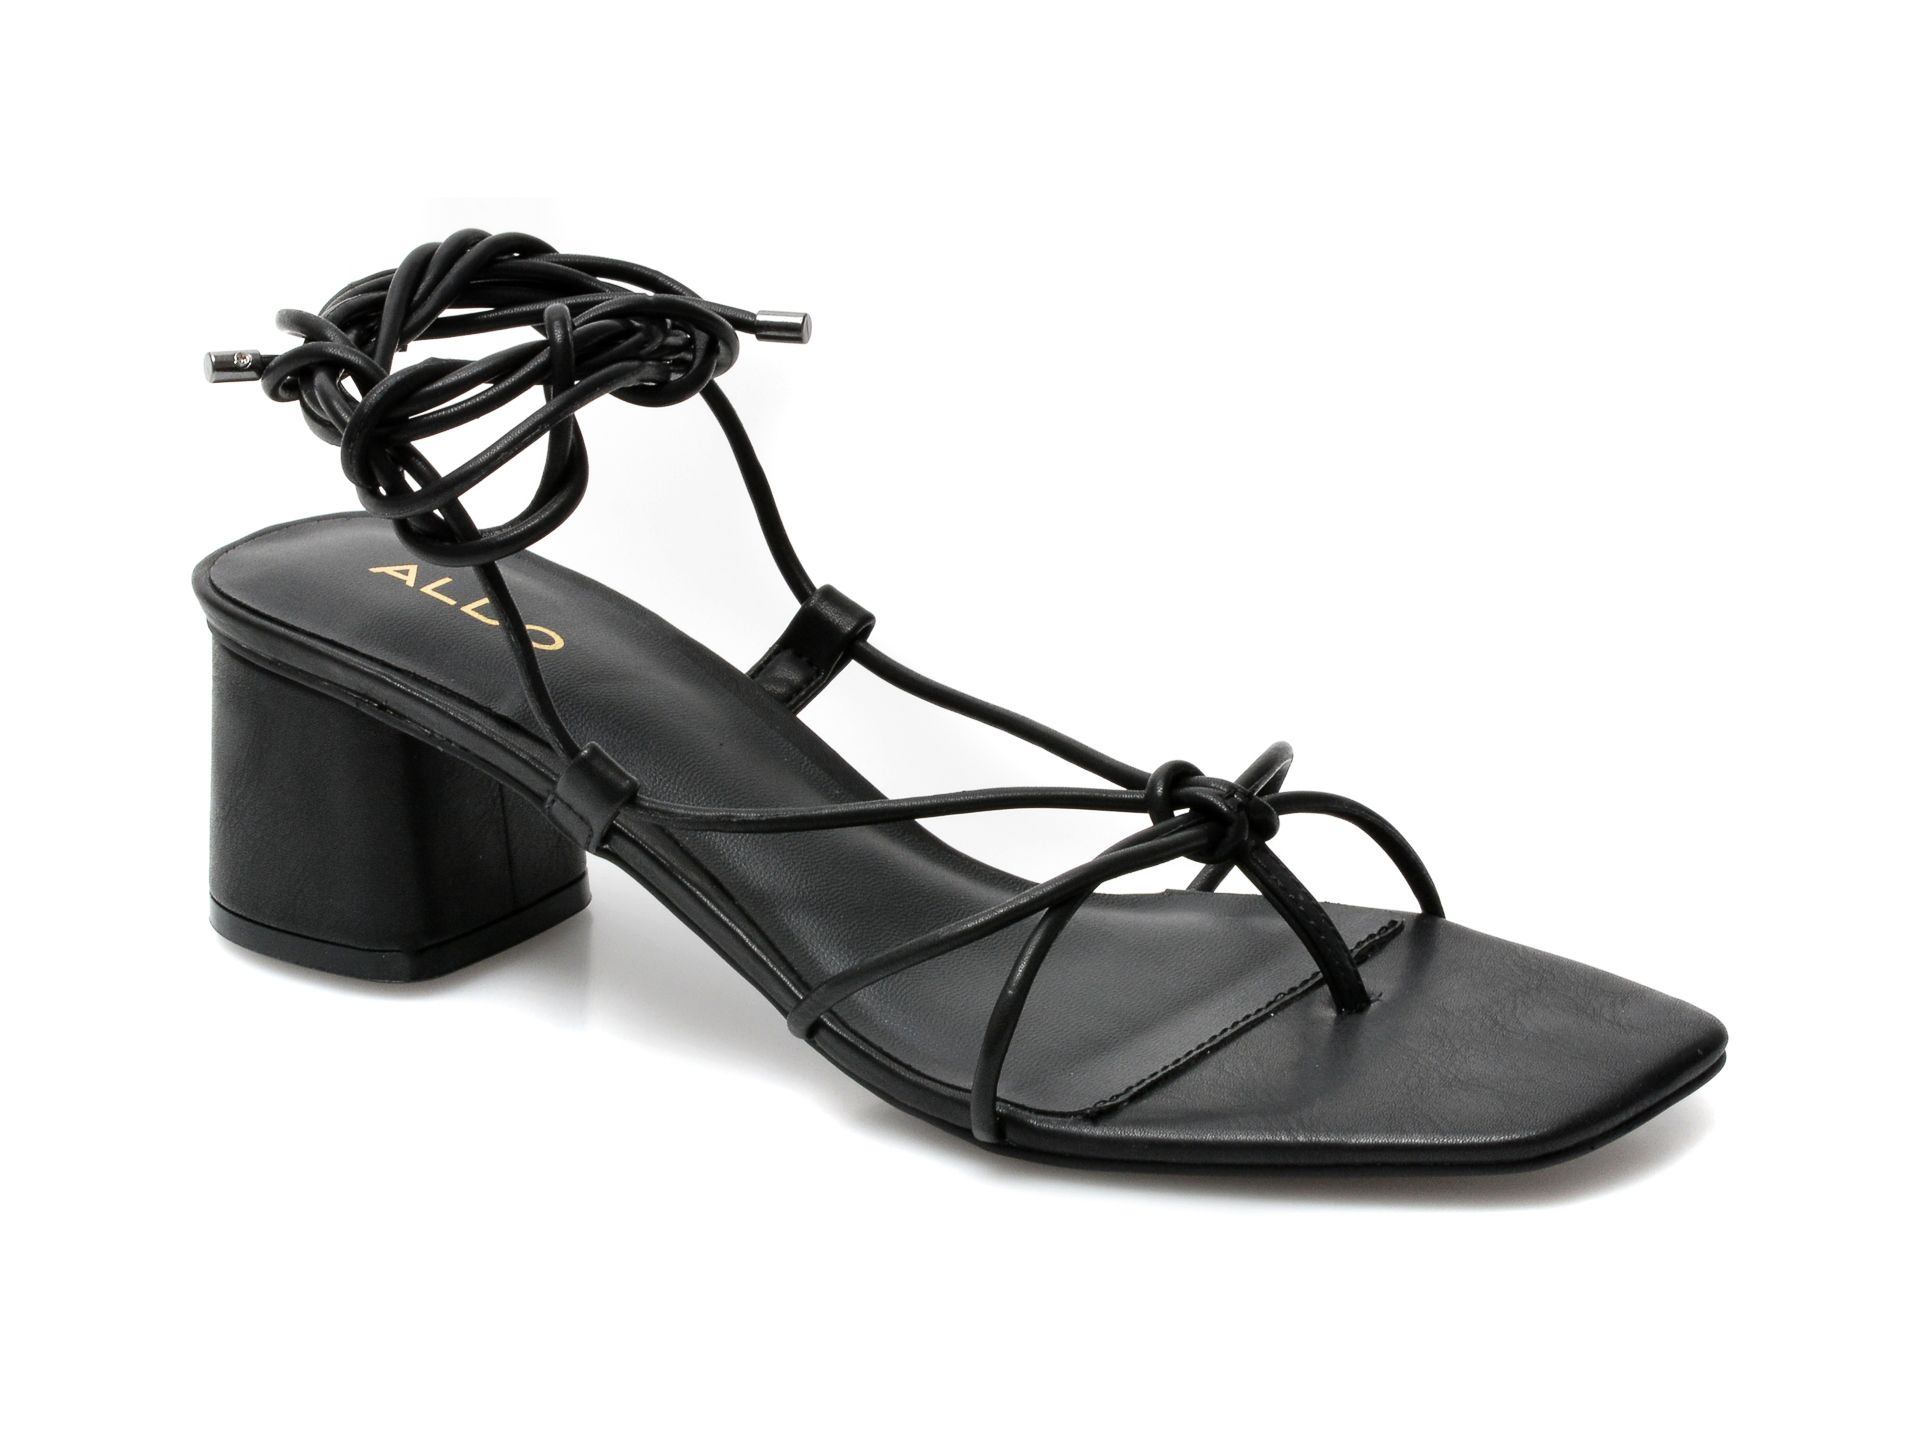 Sandale ALDO negre, Maraket001, din piele ecologica Aldo